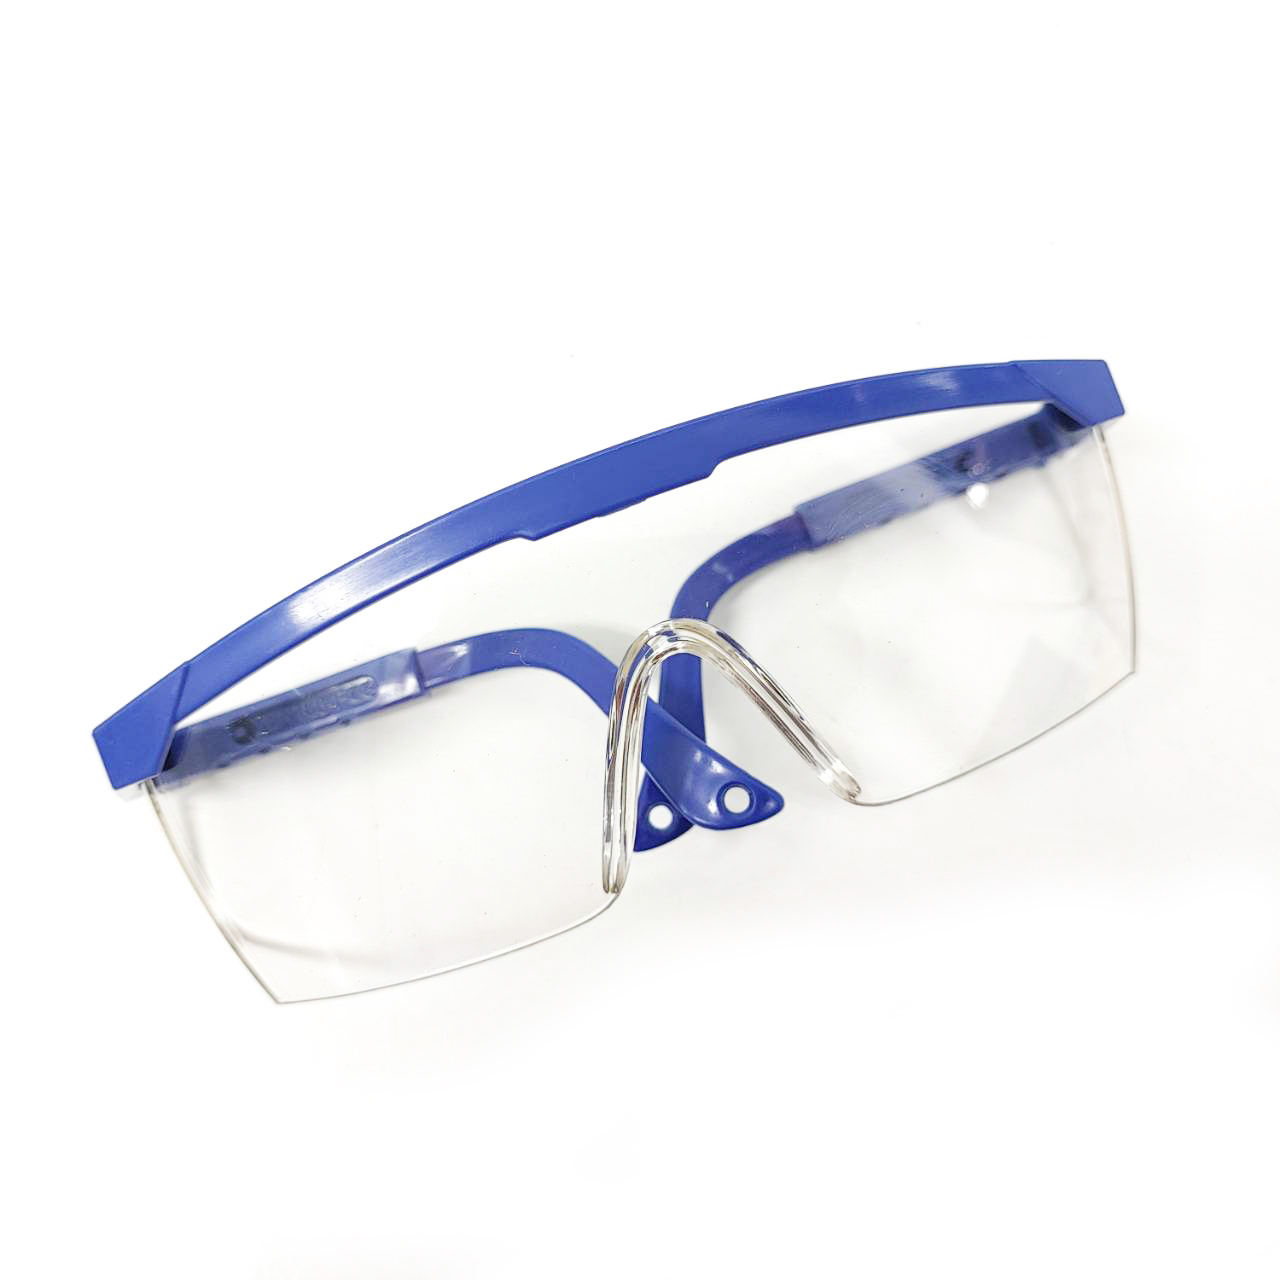 รูปภาพของ Goggles แว่นตาเซฟตี้(เลนส์ใส) แว่นตานิรภัย-ขาแว่นปรับความยาวได้ แว่นตากันลม กันสะเก็ด  แว่นตัดหญ้า ป้องกันสเก็ด ฝุ่นละออง สีใสไม่เป็นฝ้า